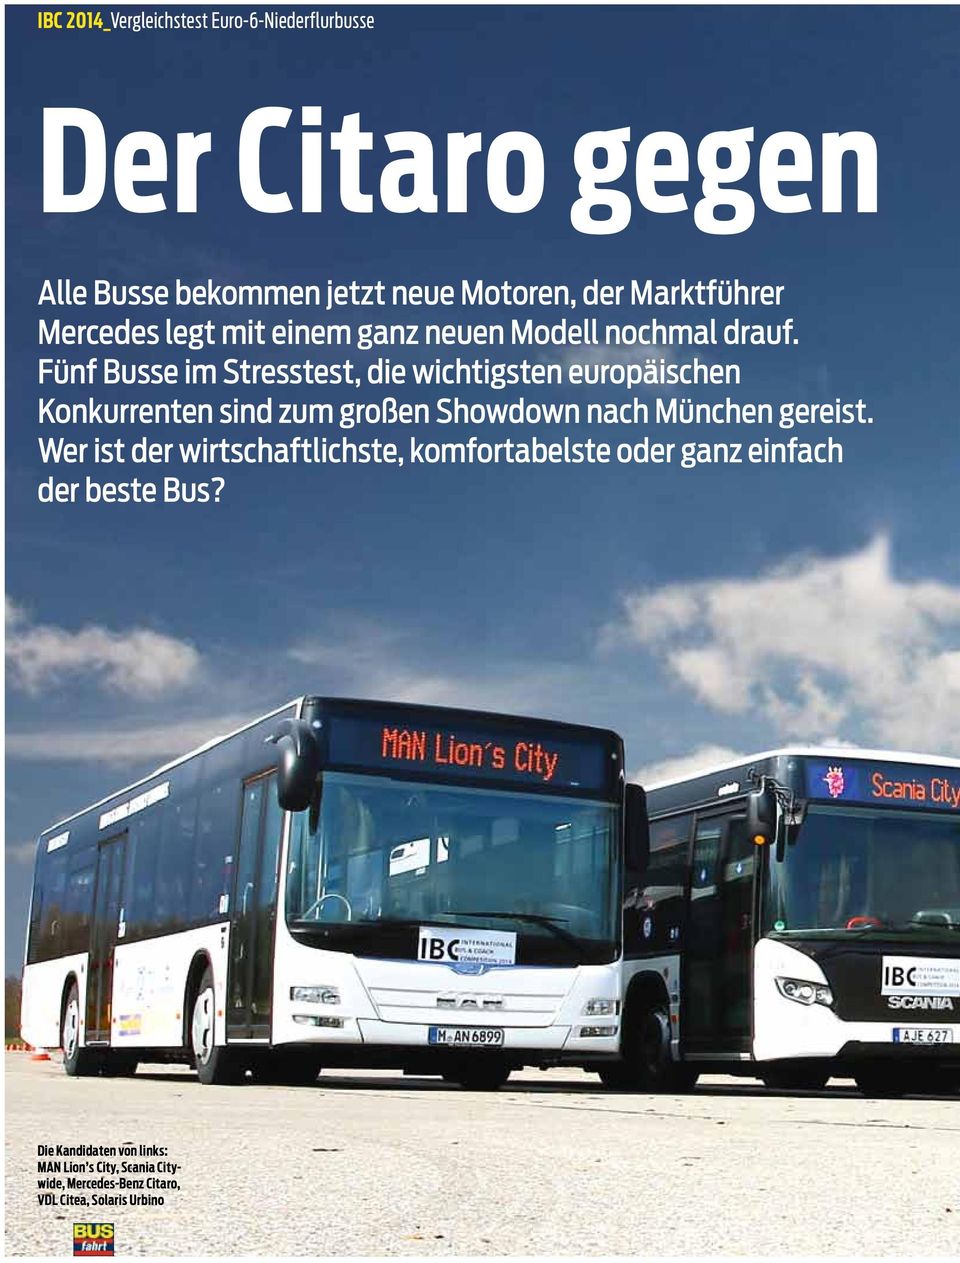 Fünf Busse im Stresstest, die wichtigsten europäischen Konkurrenten sind zum großen Showdown nach München gereist.